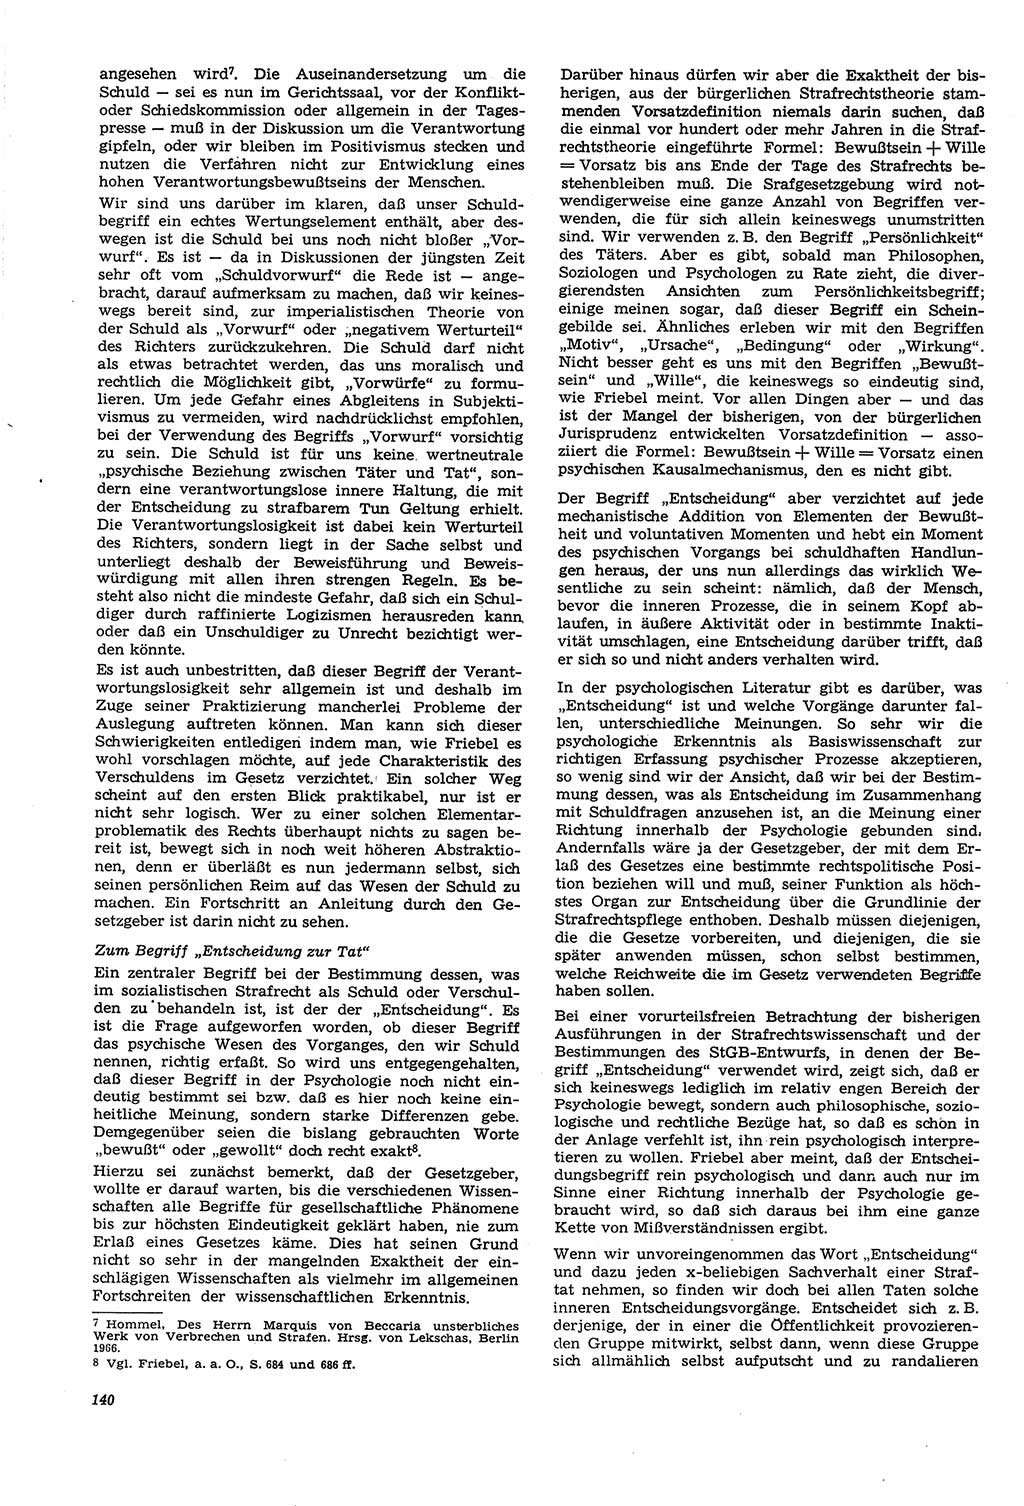 Neue Justiz (NJ), Zeitschrift für Recht und Rechtswissenschaft [Deutsche Demokratische Republik (DDR)], 21. Jahrgang 1967, Seite 140 (NJ DDR 1967, S. 140)